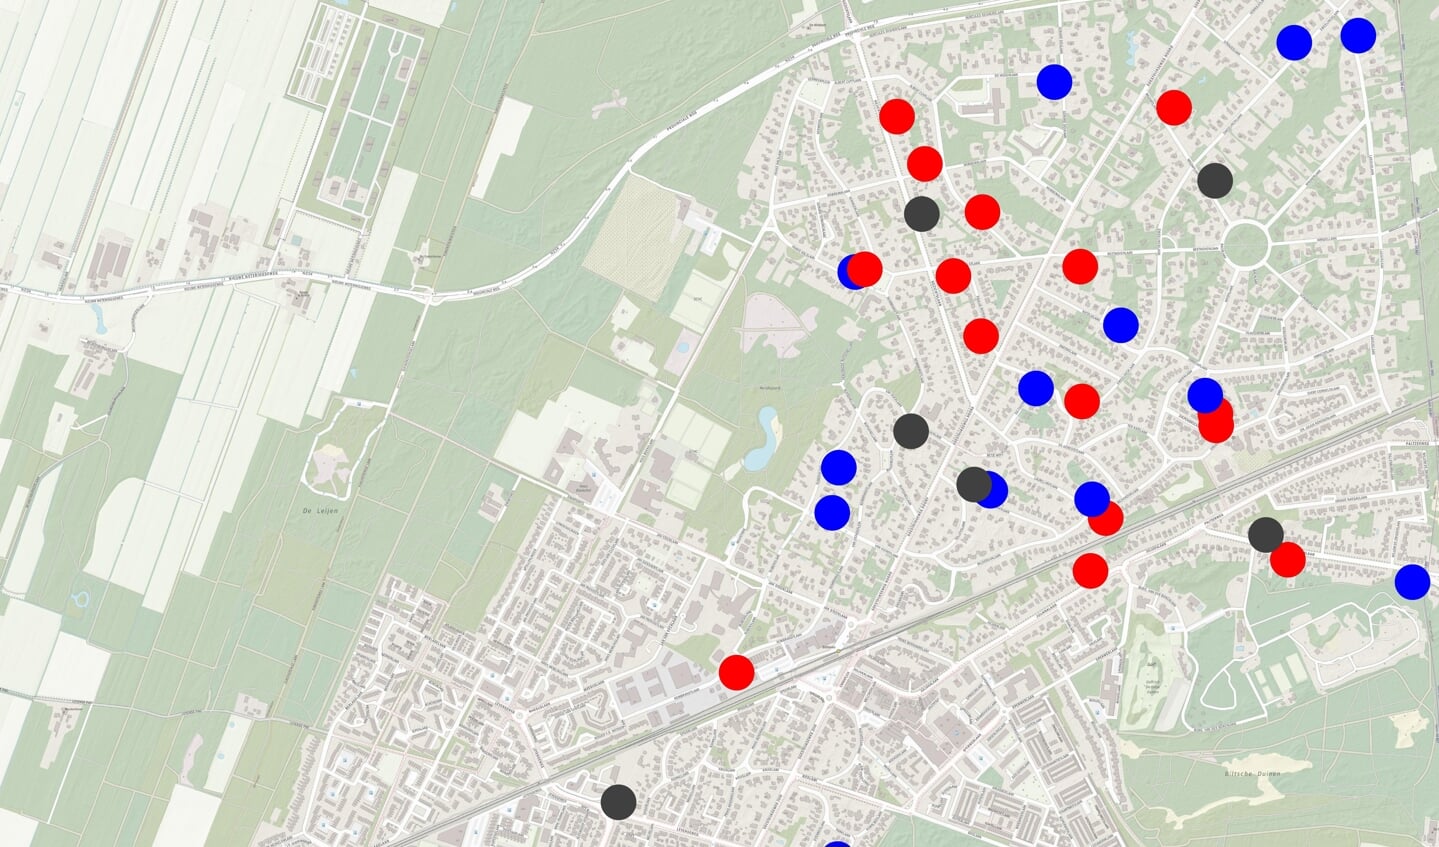 Het grootste aantal struikelstenen valt in De Bilt te verwachten, maar ook Groenekan, Westbroek en Hollandsche Rading staan op de nominatie.